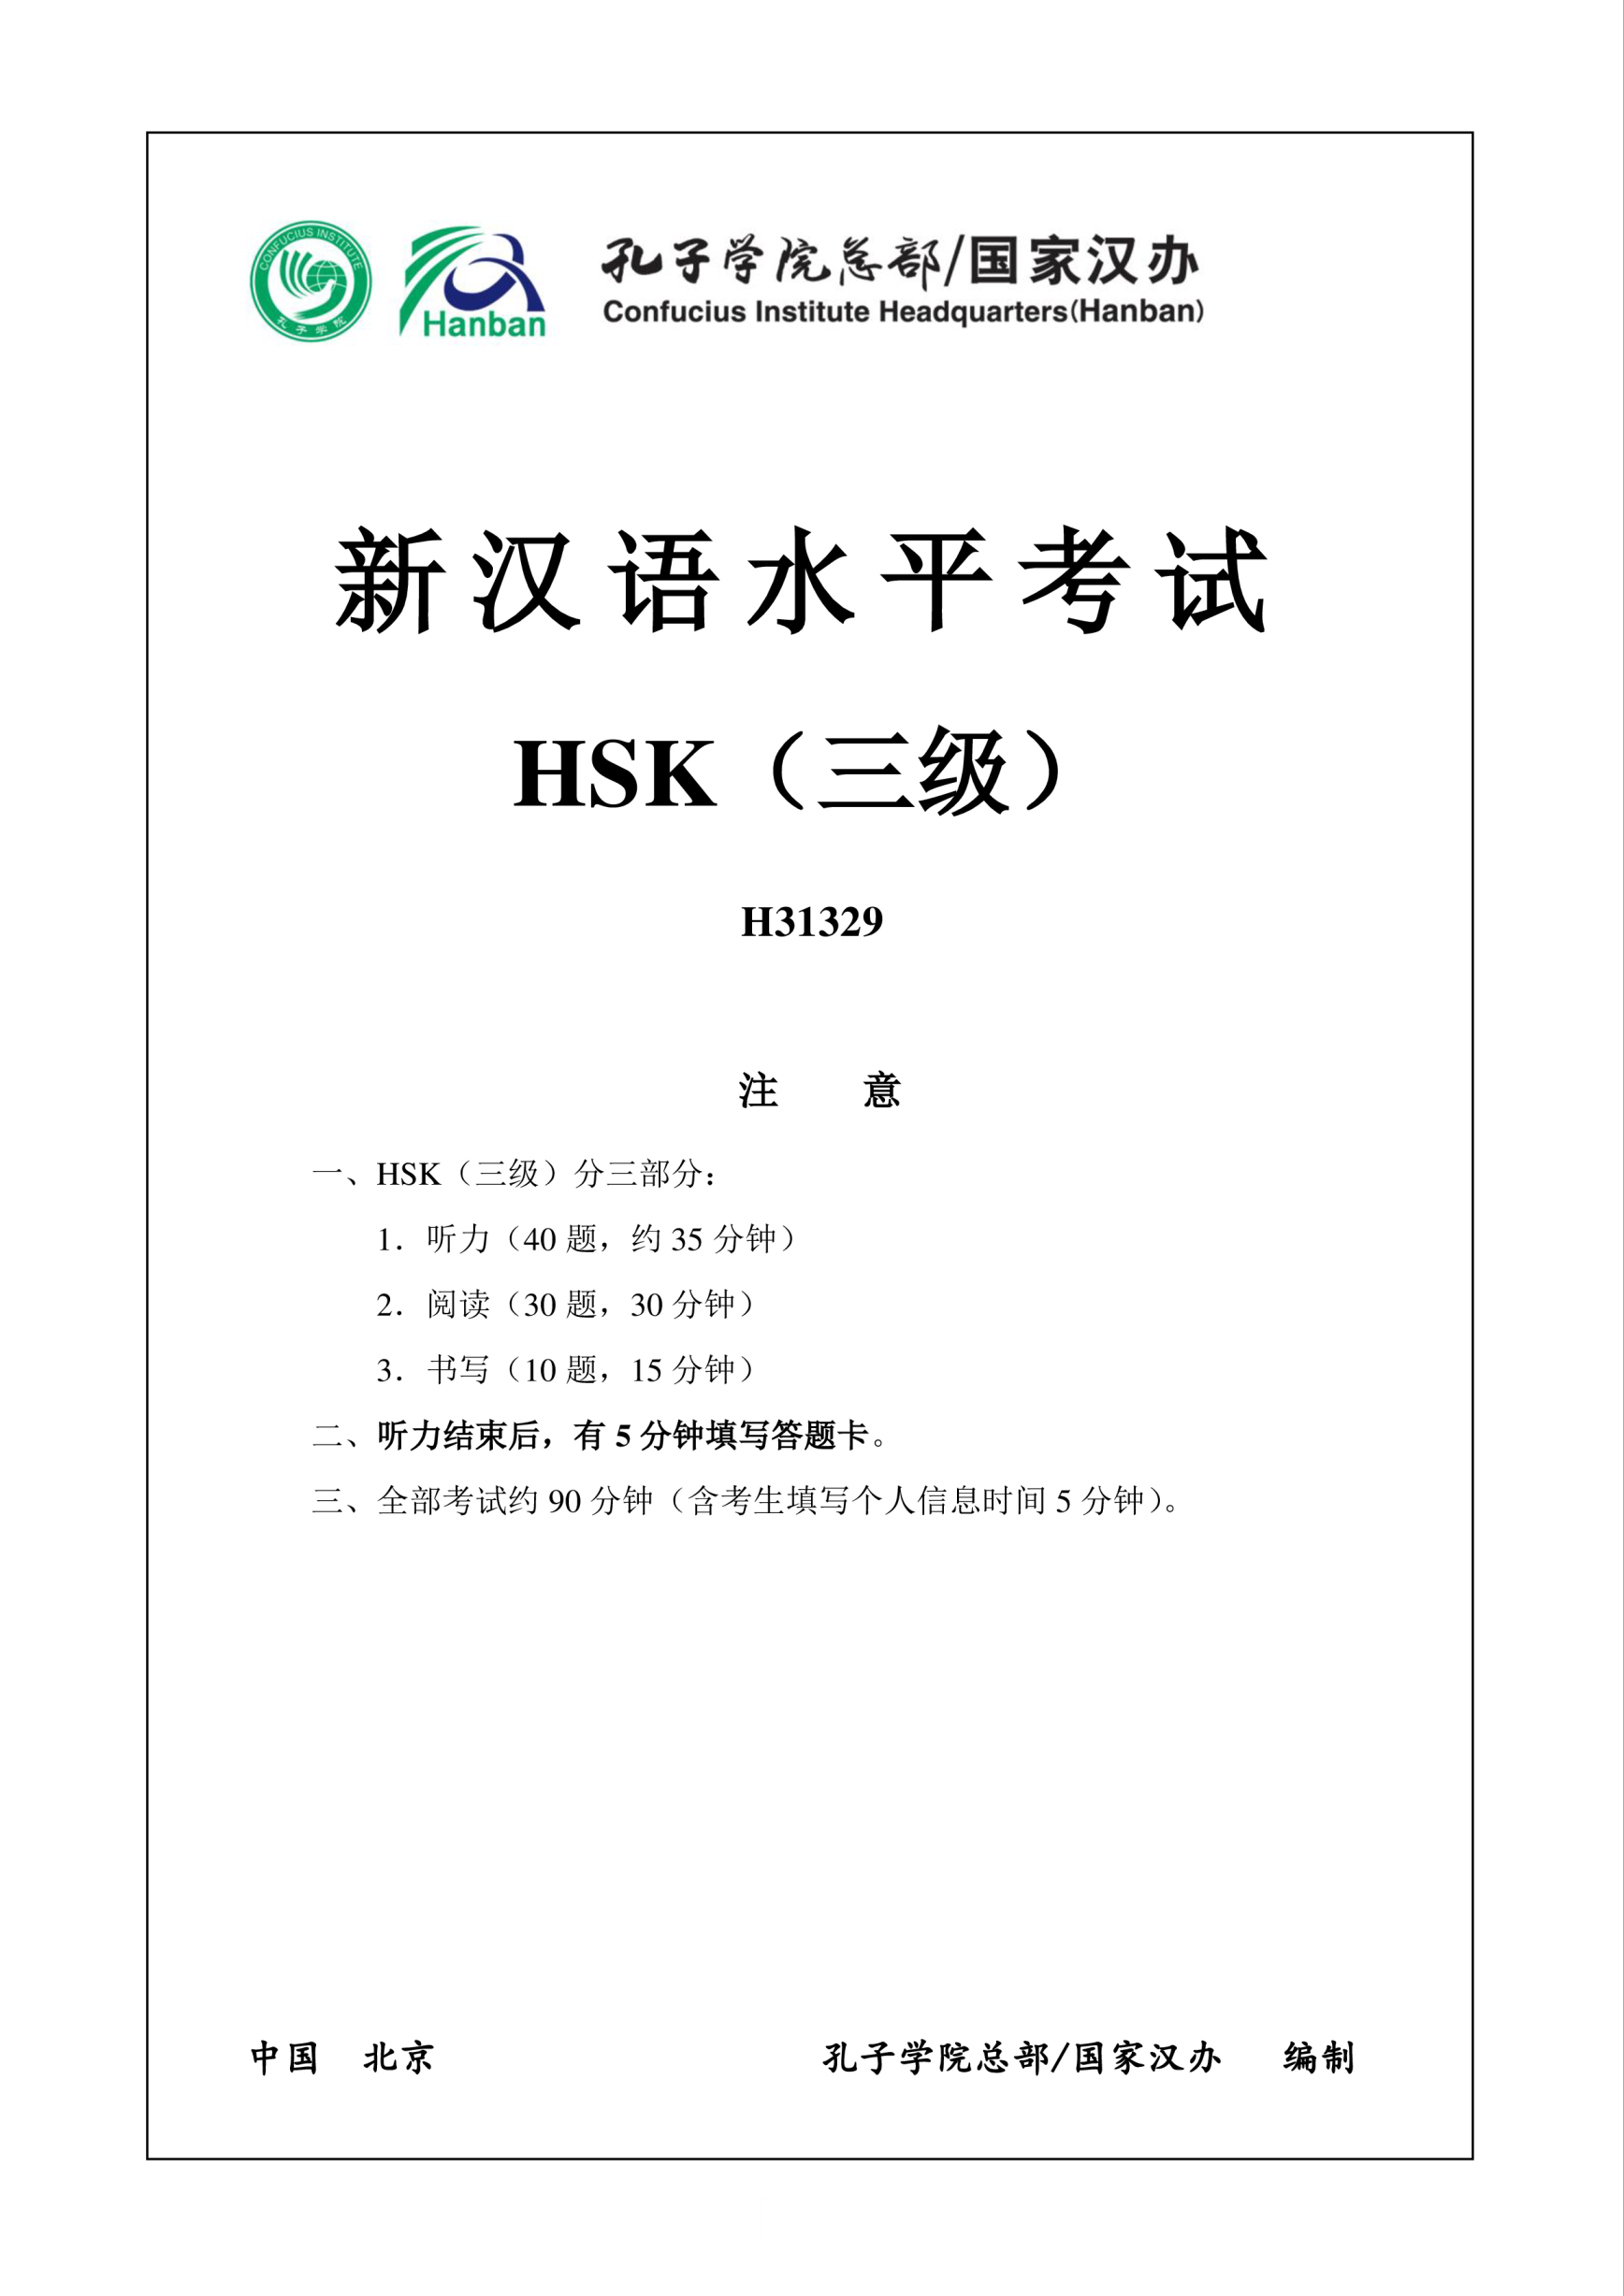 Vorschaubild der VorlageHSK3 Chinese Exam including Answers # H31329